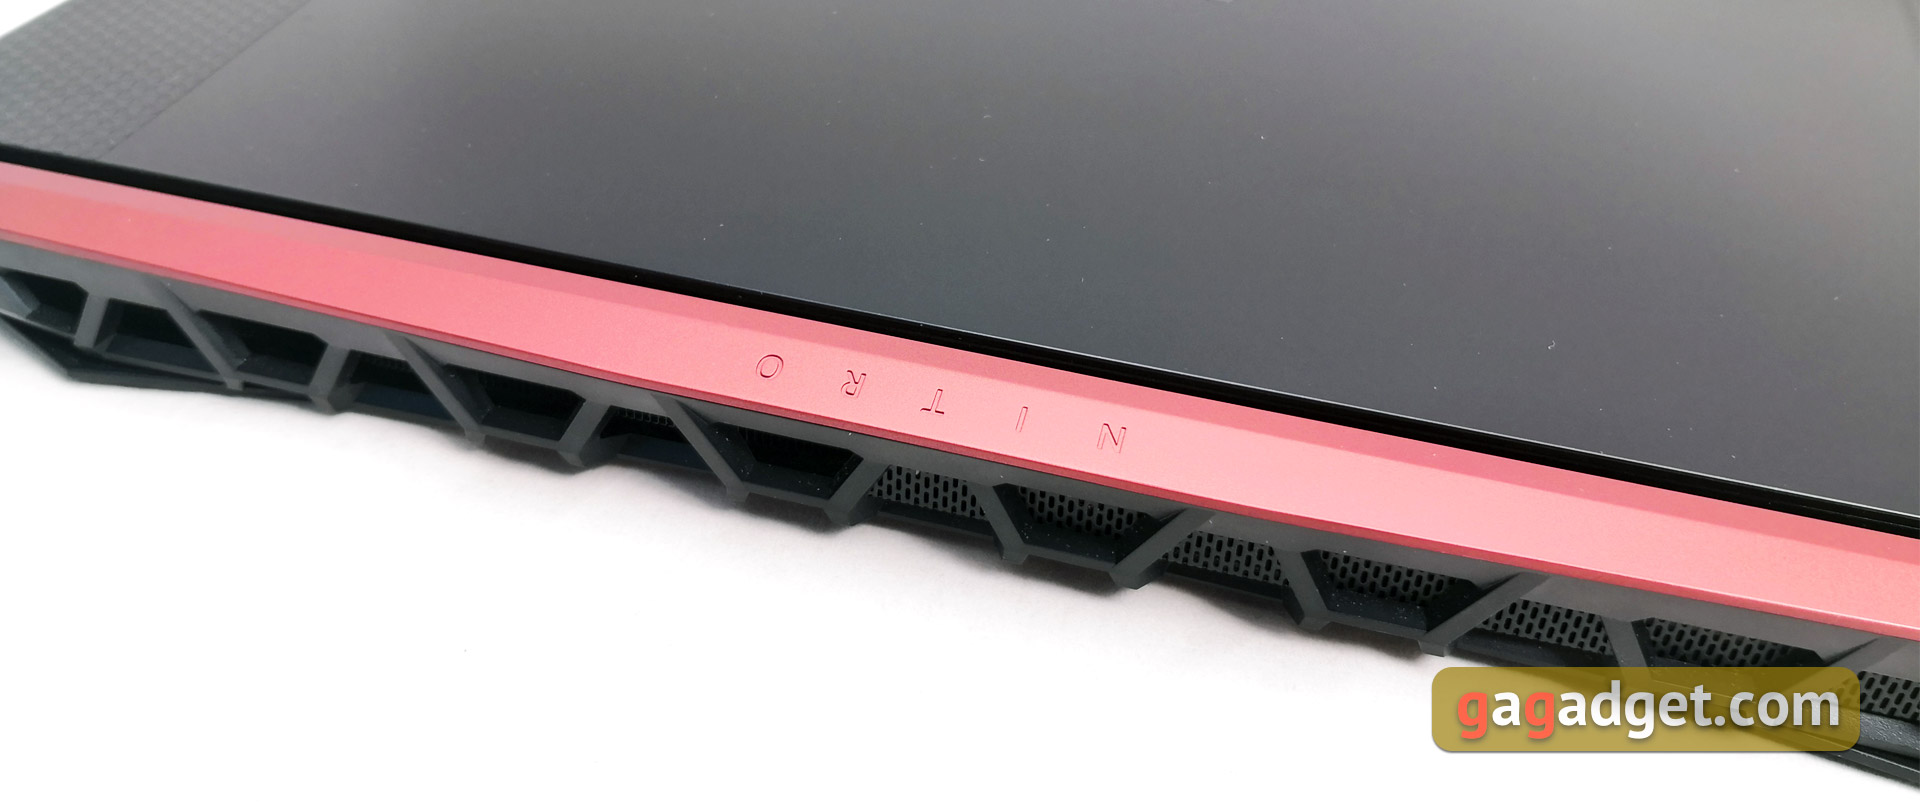 Обзор геймерского ноутбука Acer Nitro 5 AN515-54: недорогой и мощный-10